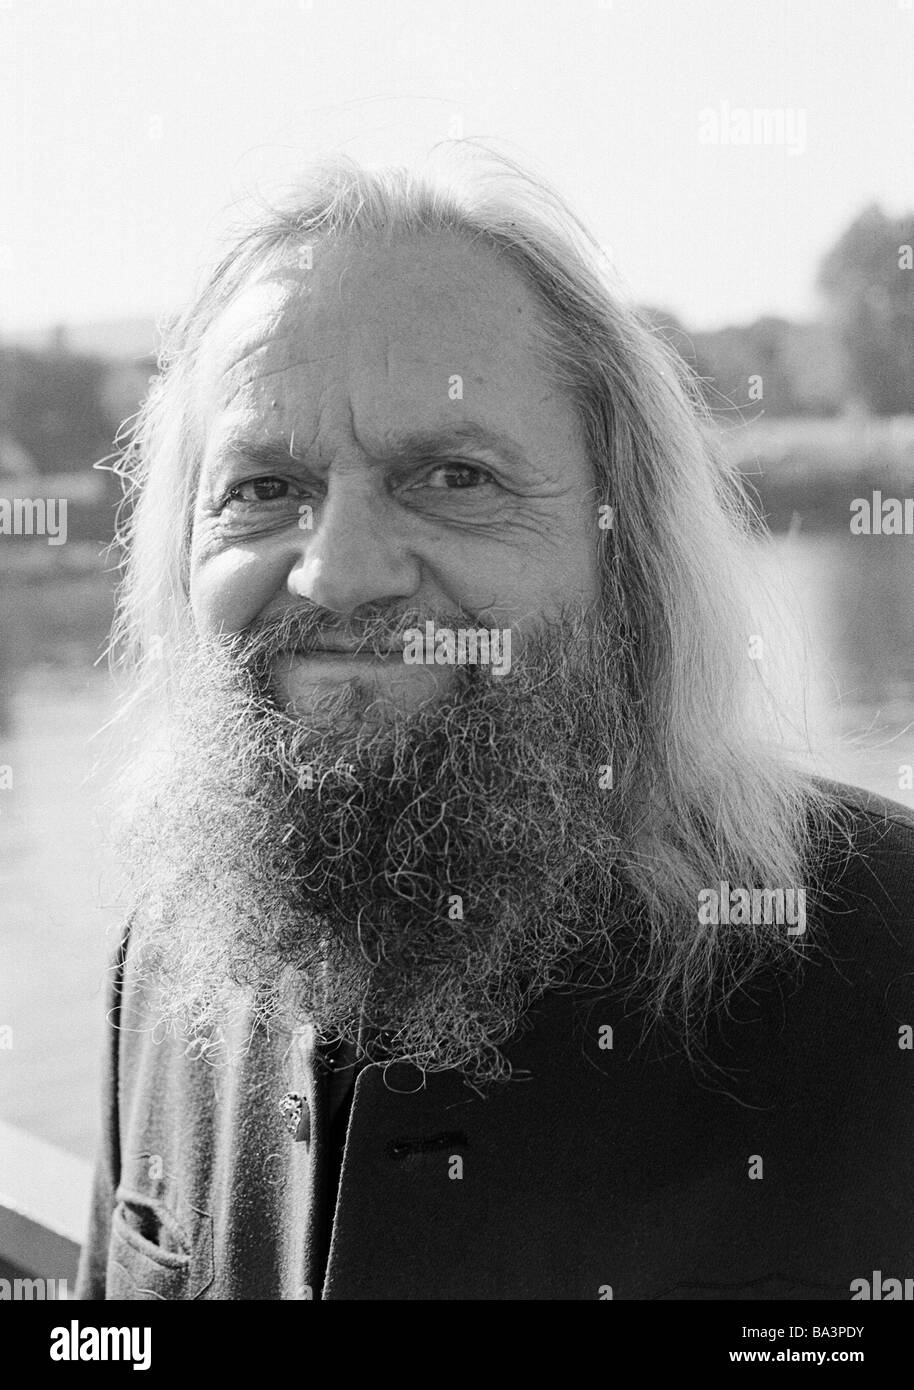 Negli anni settanta, foto in bianco e nero, persone, uomo anziano, ritratto, con i capelli lunghi, pieno di barba e baffi, di età compresa tra 65 a 75 anni Foto Stock